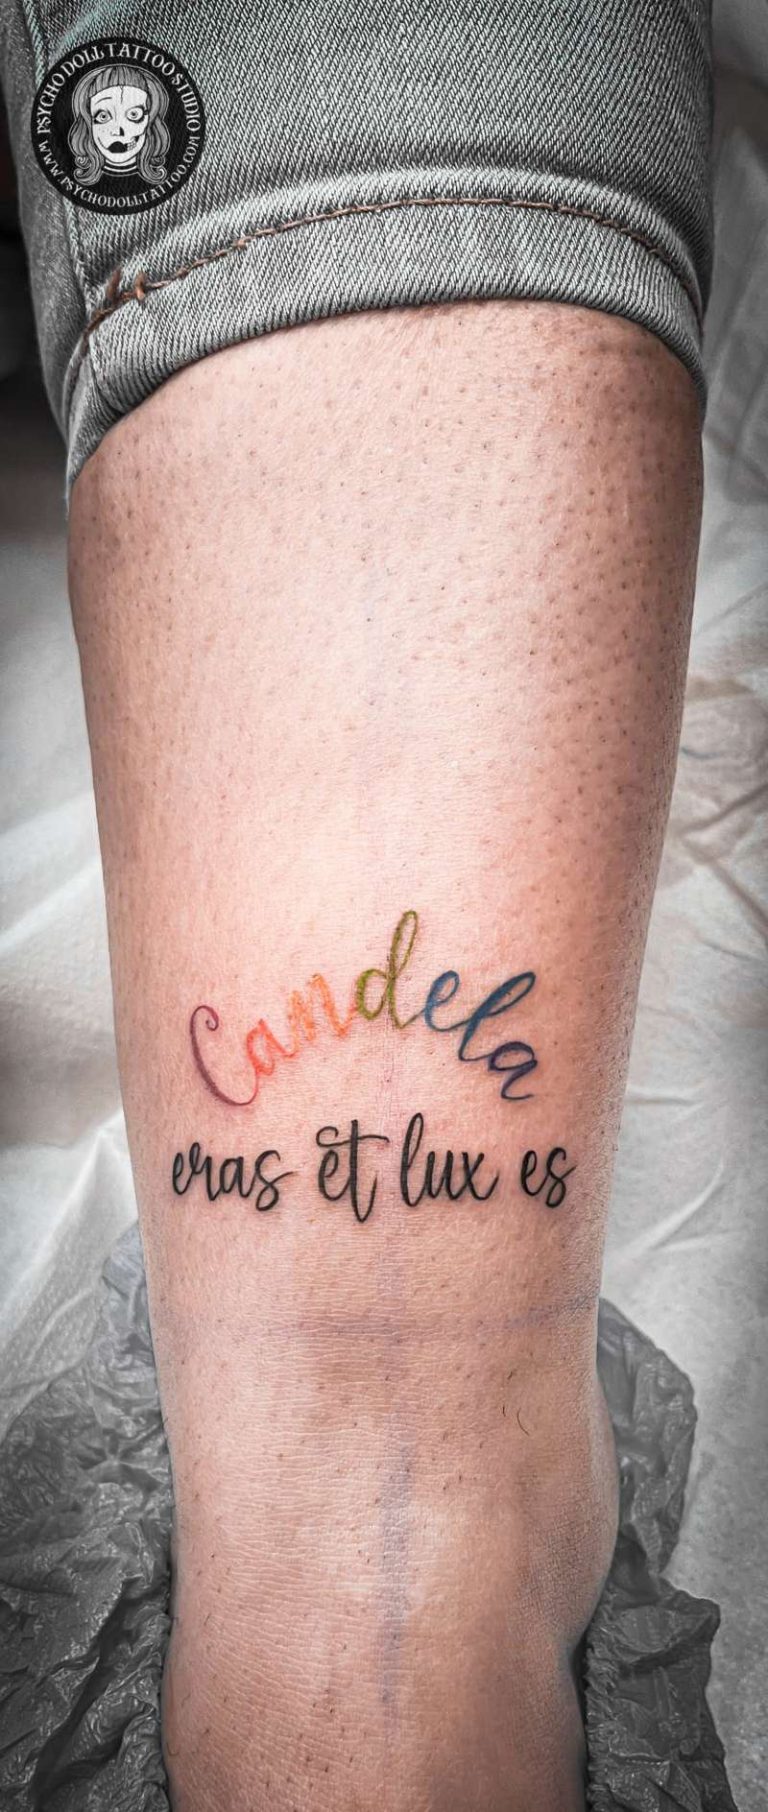 Tatuaje nombre Candela con varios colores